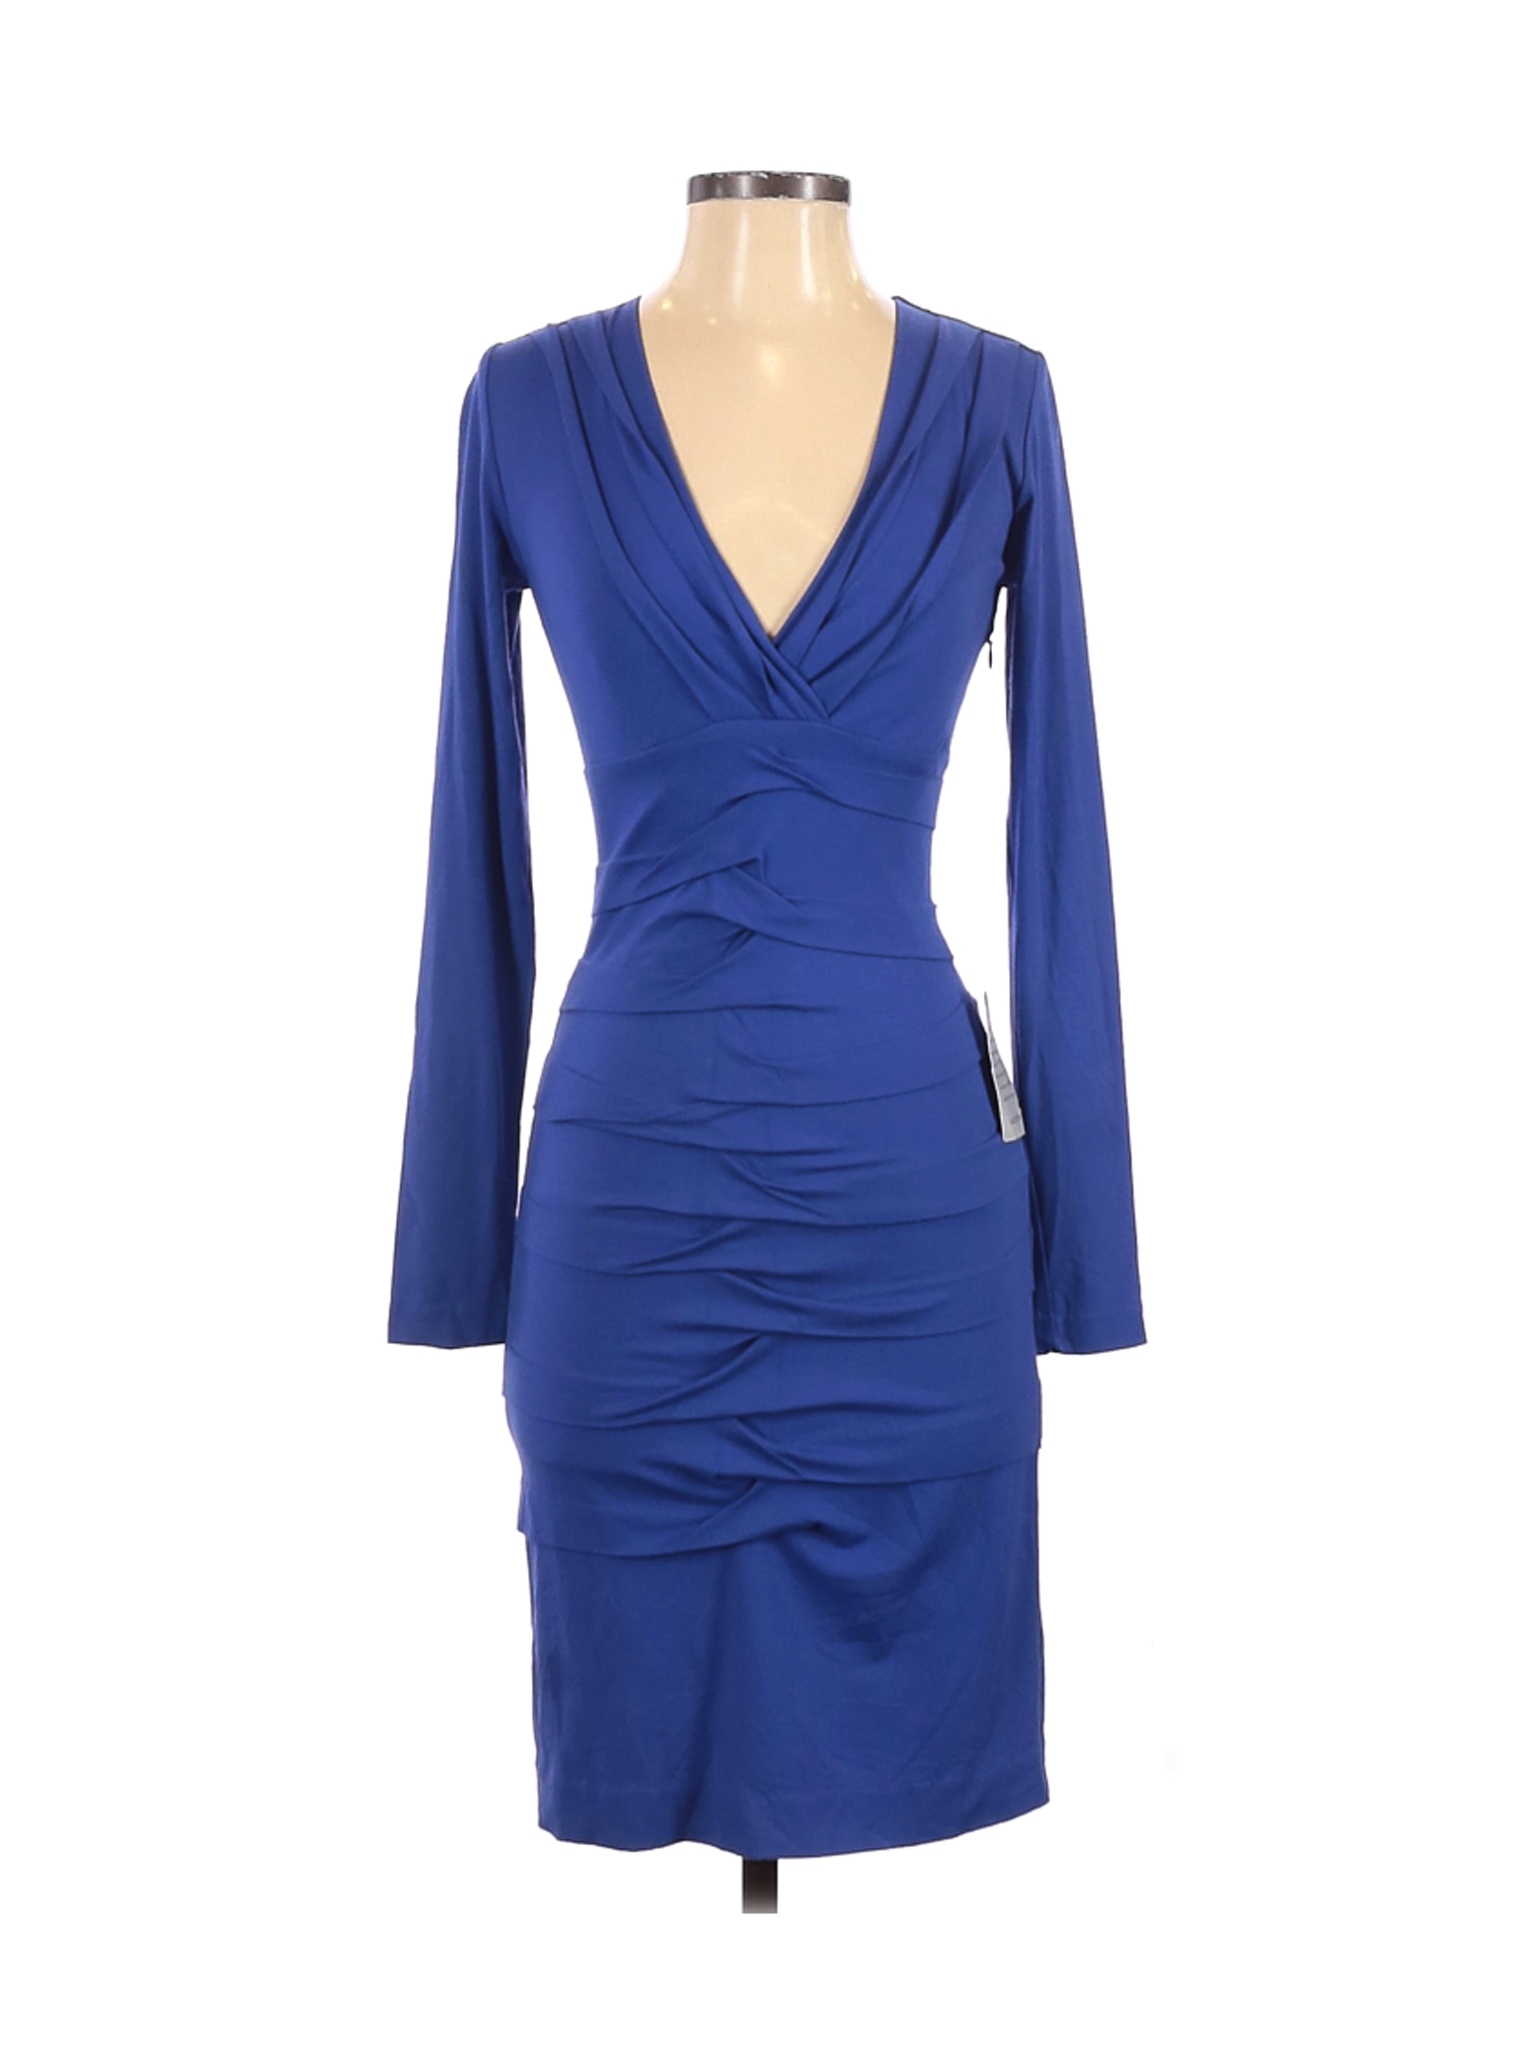 Nicole Miller Artelier Women Blue Casual Dress P | eBay